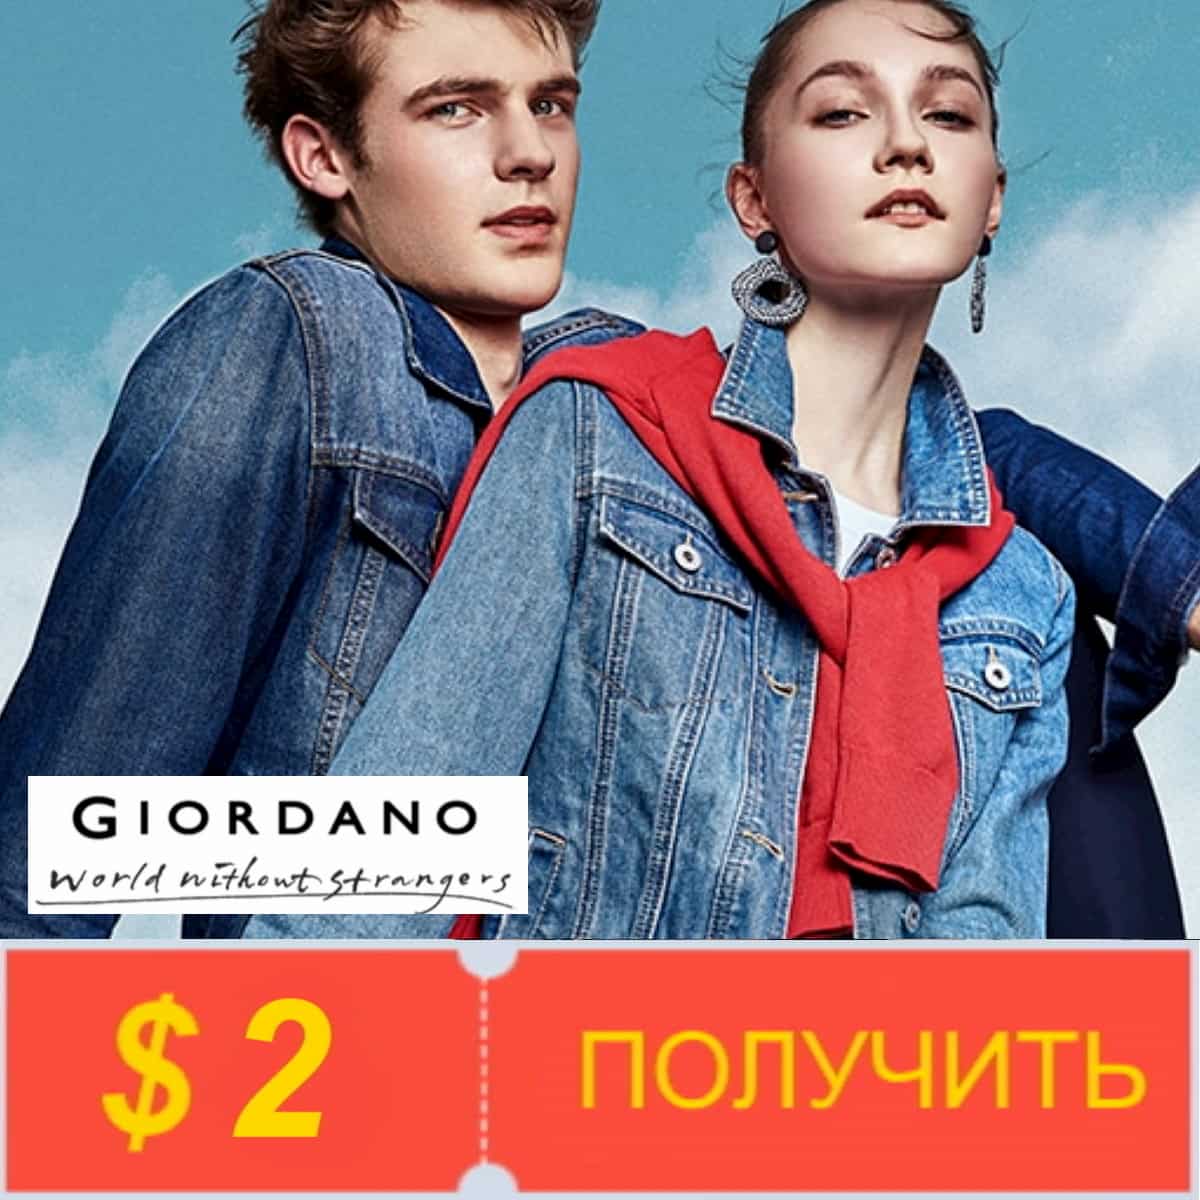 Получите купоны от Giordano Official Store на Алиэкспресс